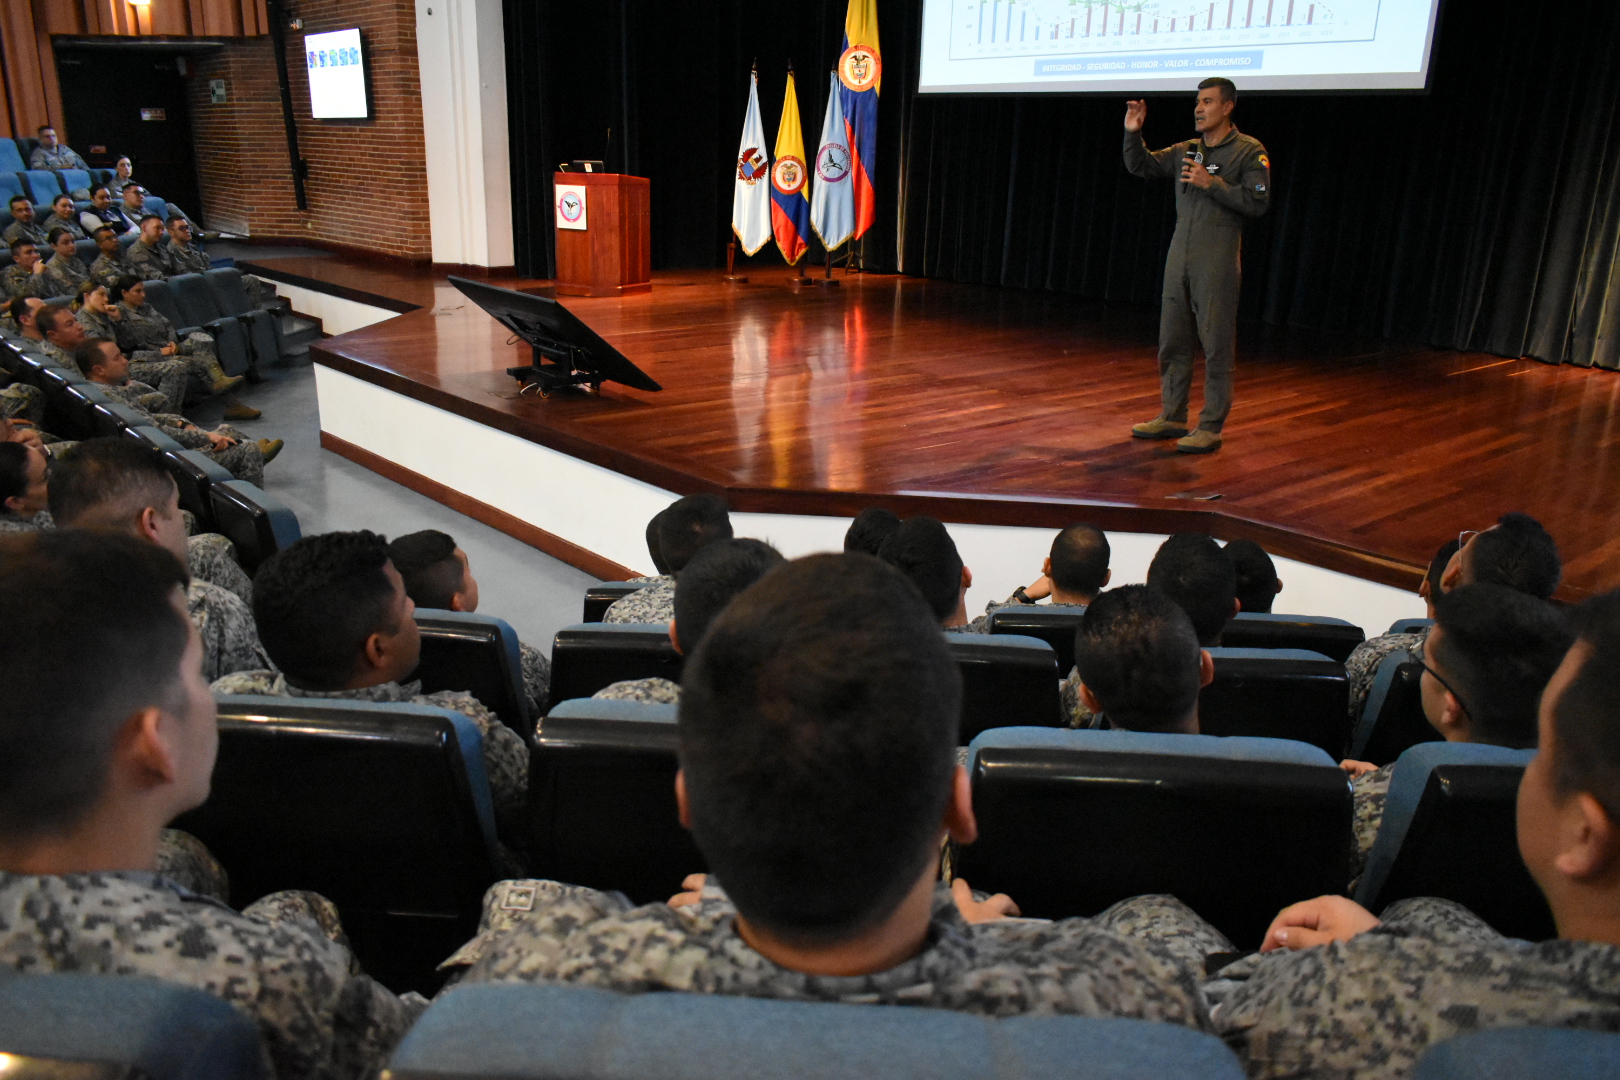 Comandante de la Fuerza Aérea dirigió conferencia de liderazgo y proyección institucional en la EPFAC